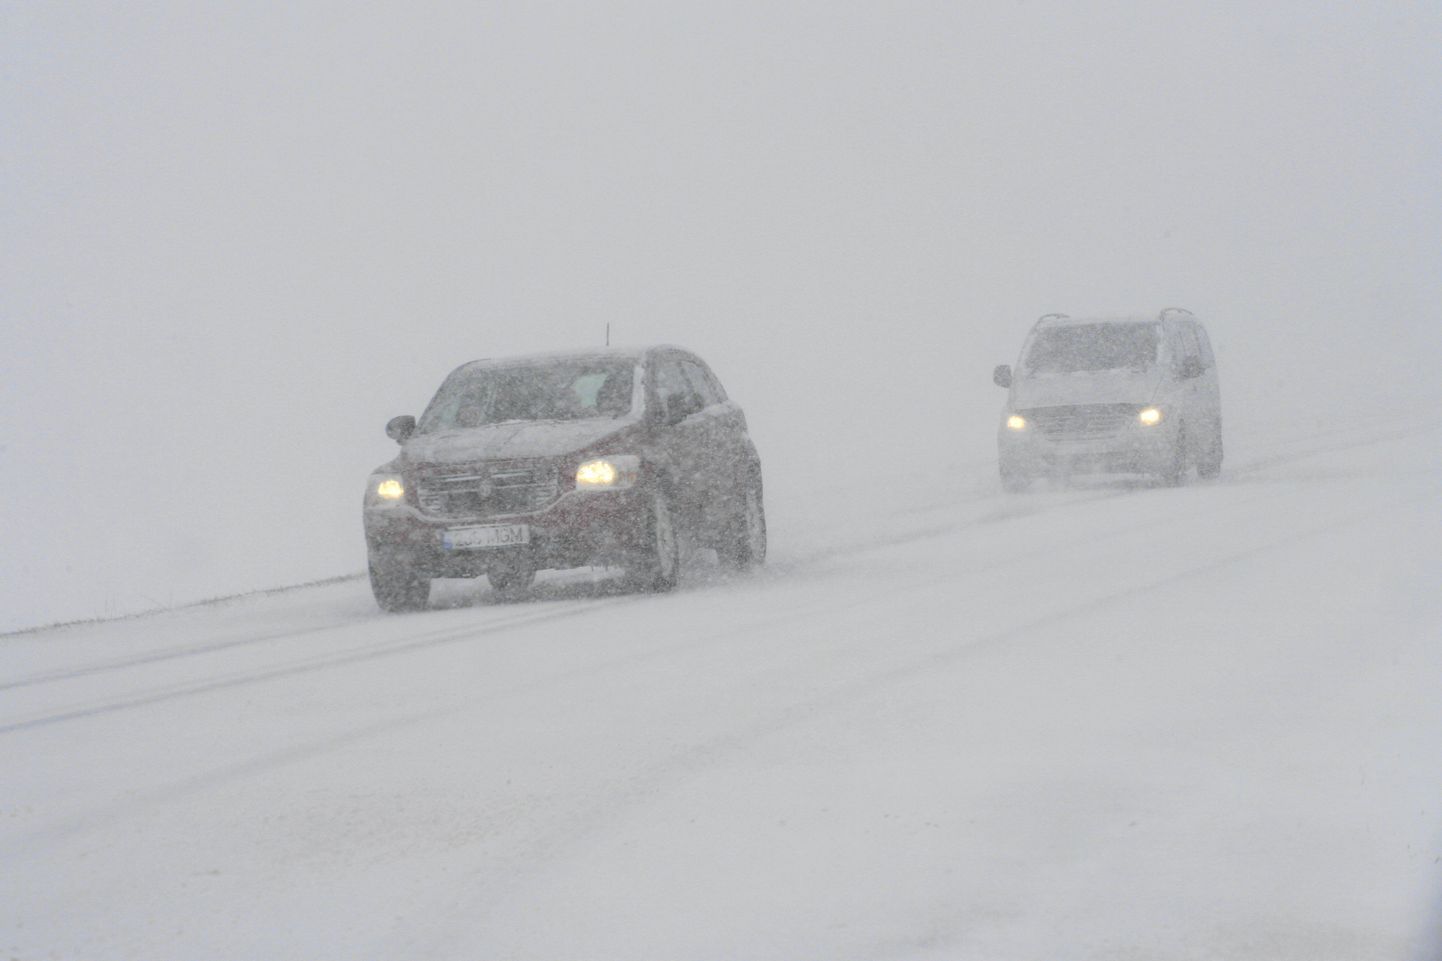 Eestis valitsevad juba pikemat aega talviselt rasked teeolud, mistõttu tasub liikluses eriti hoolas olla.